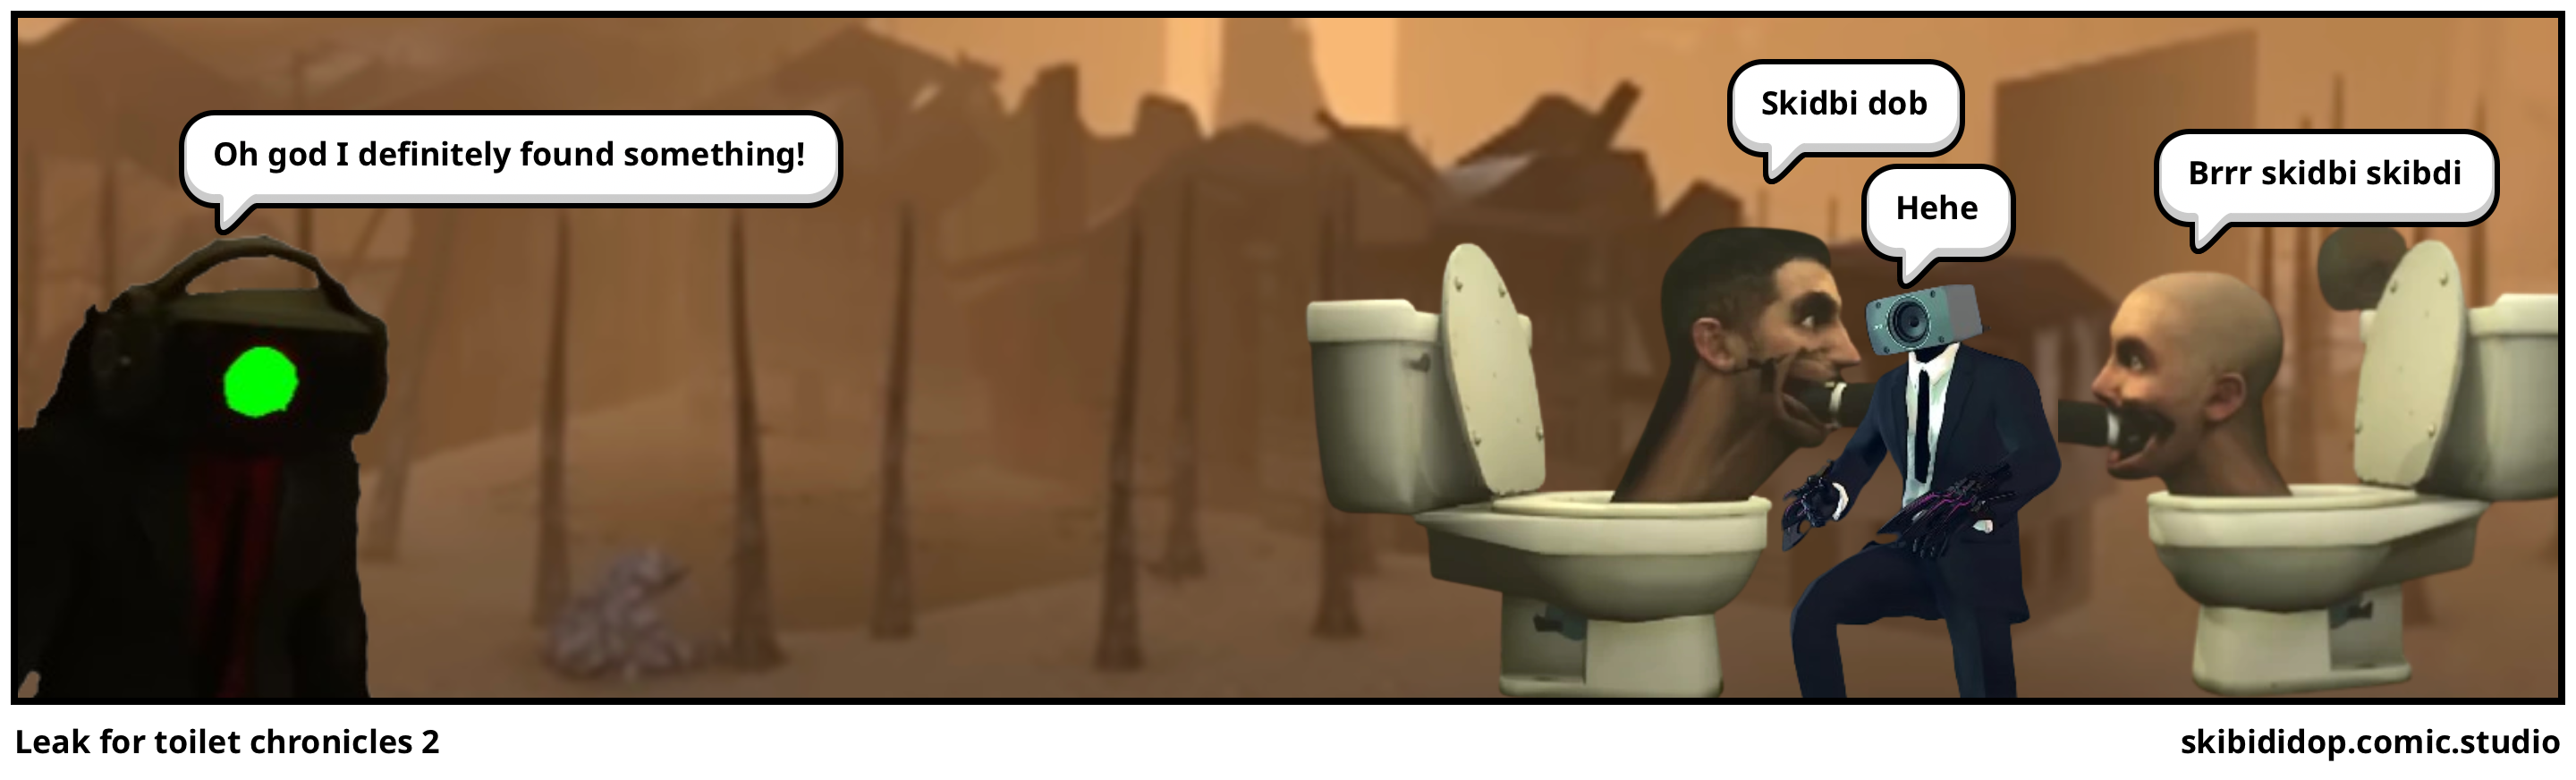 Leak for toilet chronicles 2